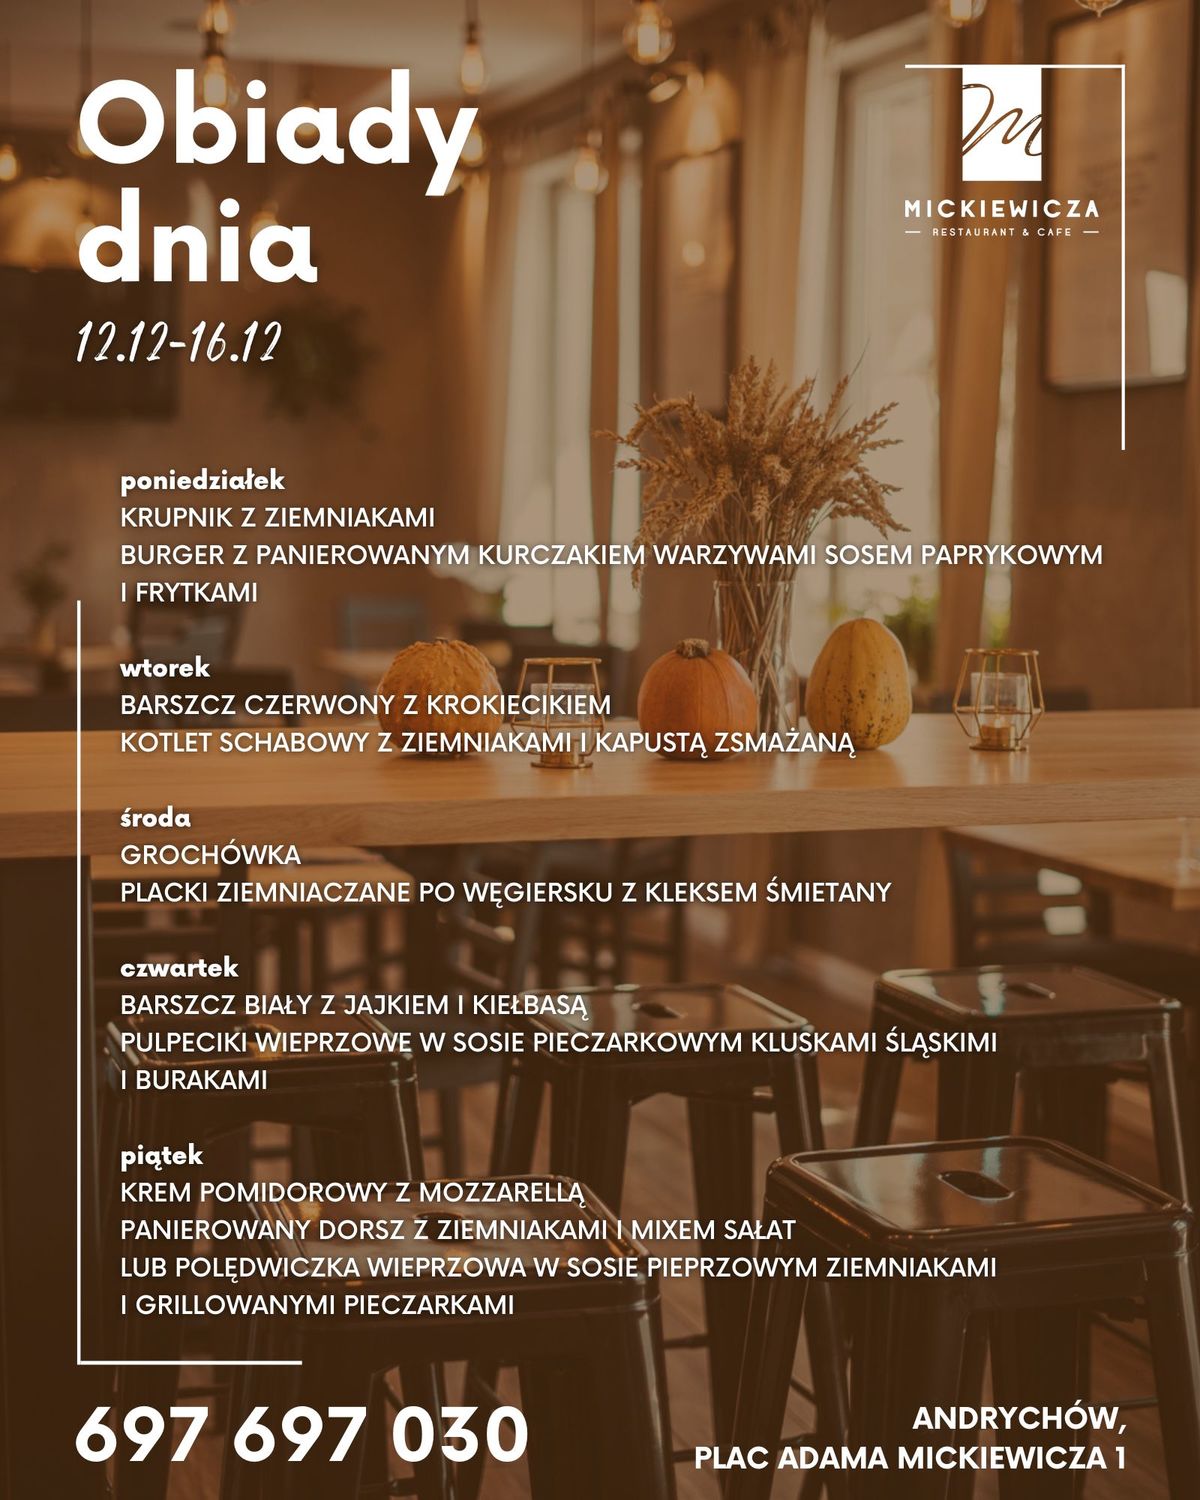 Obiady Dnia w restauracji Mickiewicza w Andrychowie. 12-16 grudnia